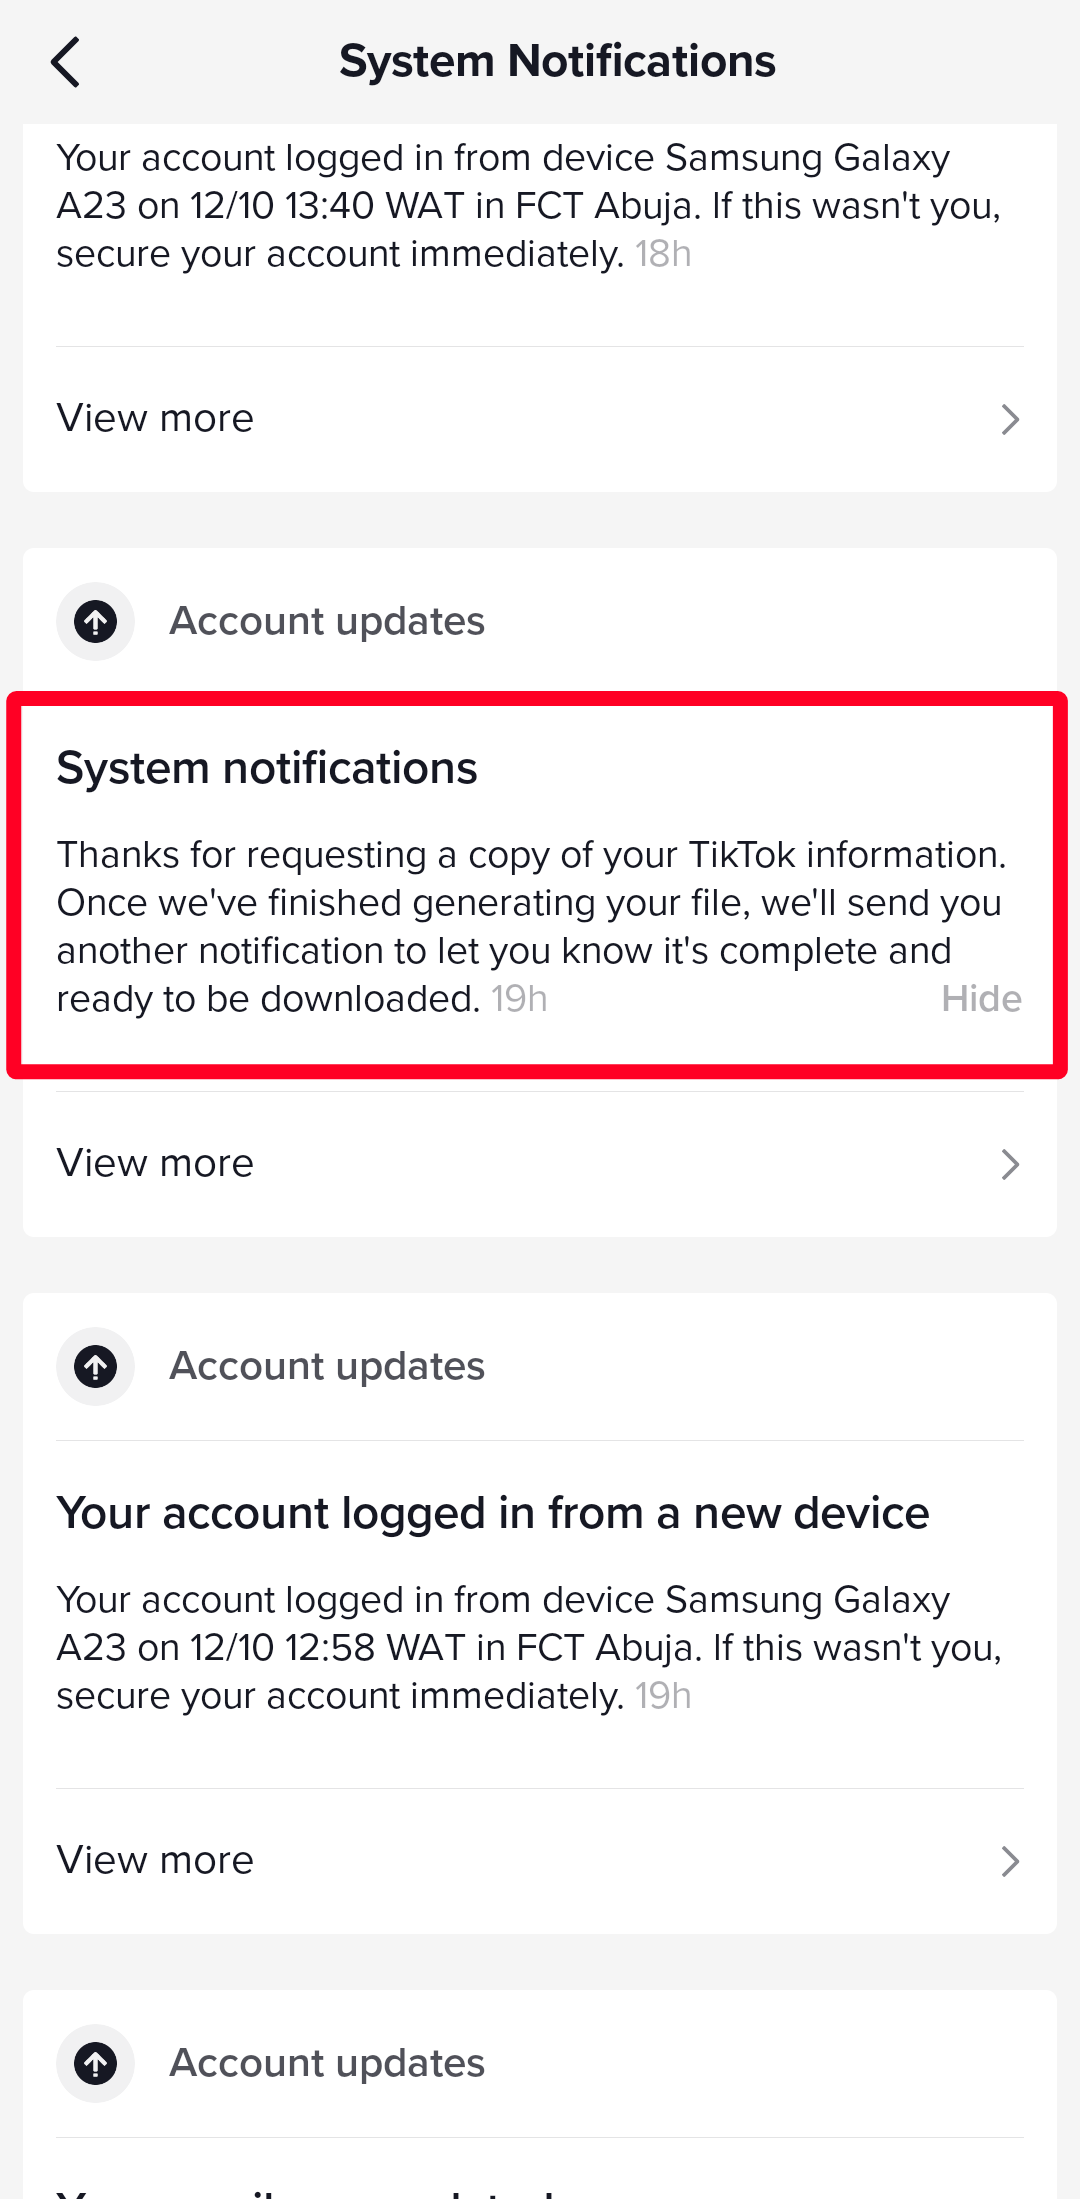 System notifications menu on TikTok